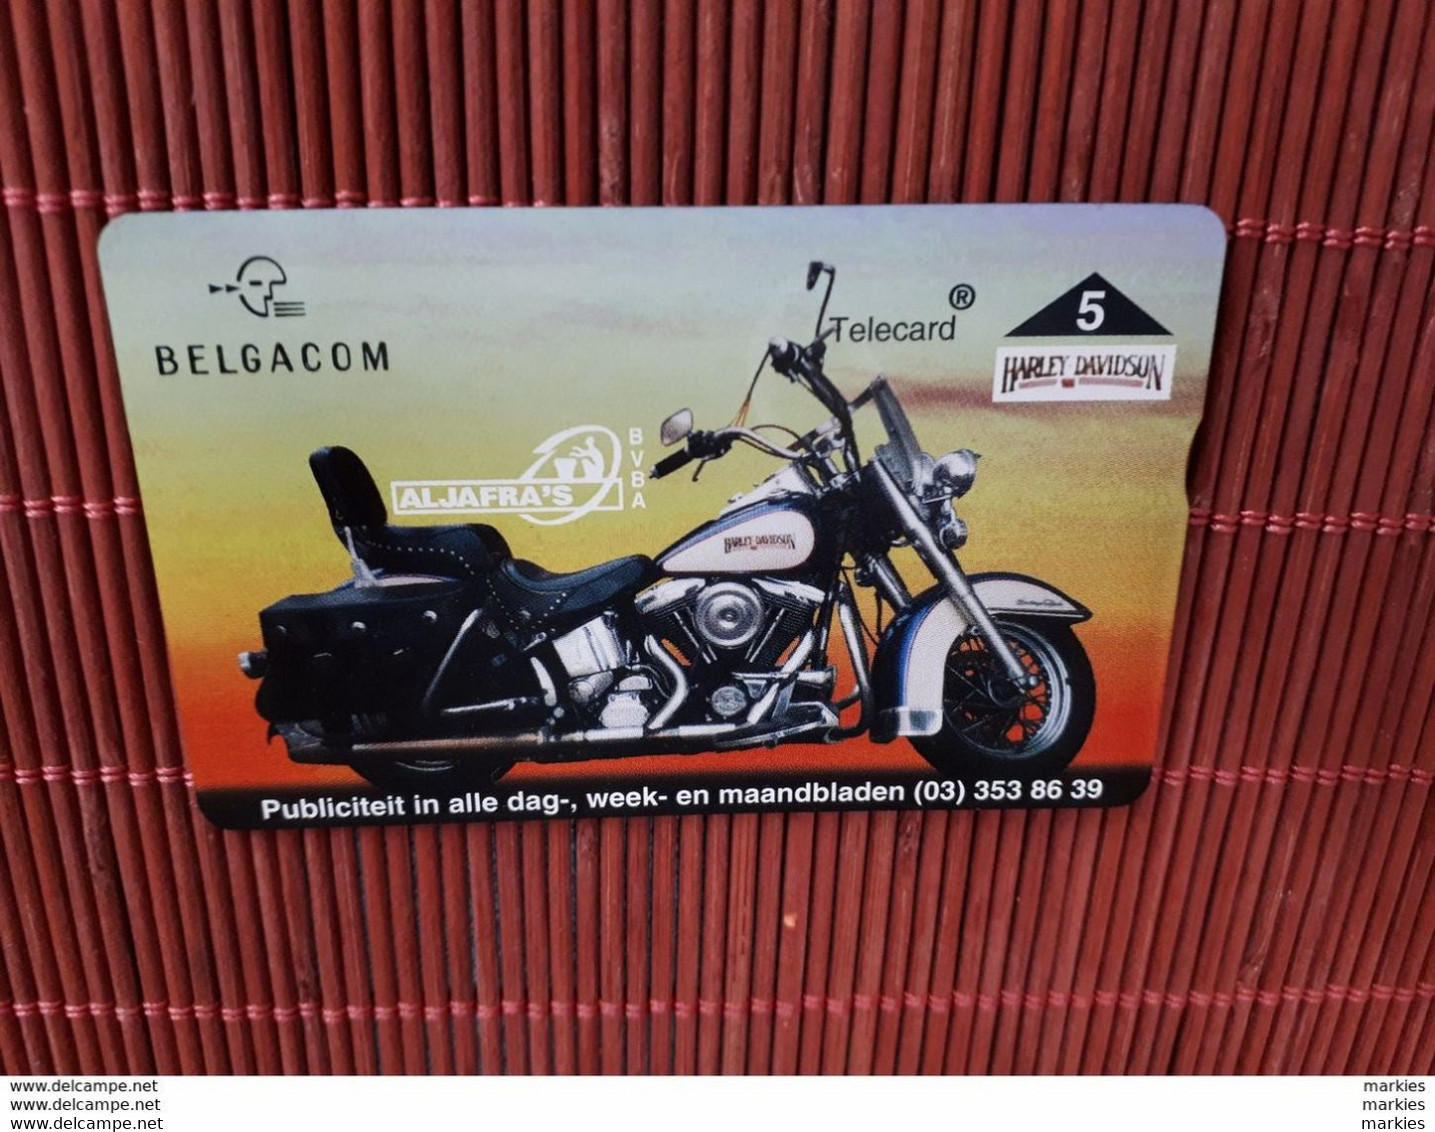 P 353 Harley  Davidson Phonecard 512 L(Mint Neuve)  Rare ! - Senza Chip